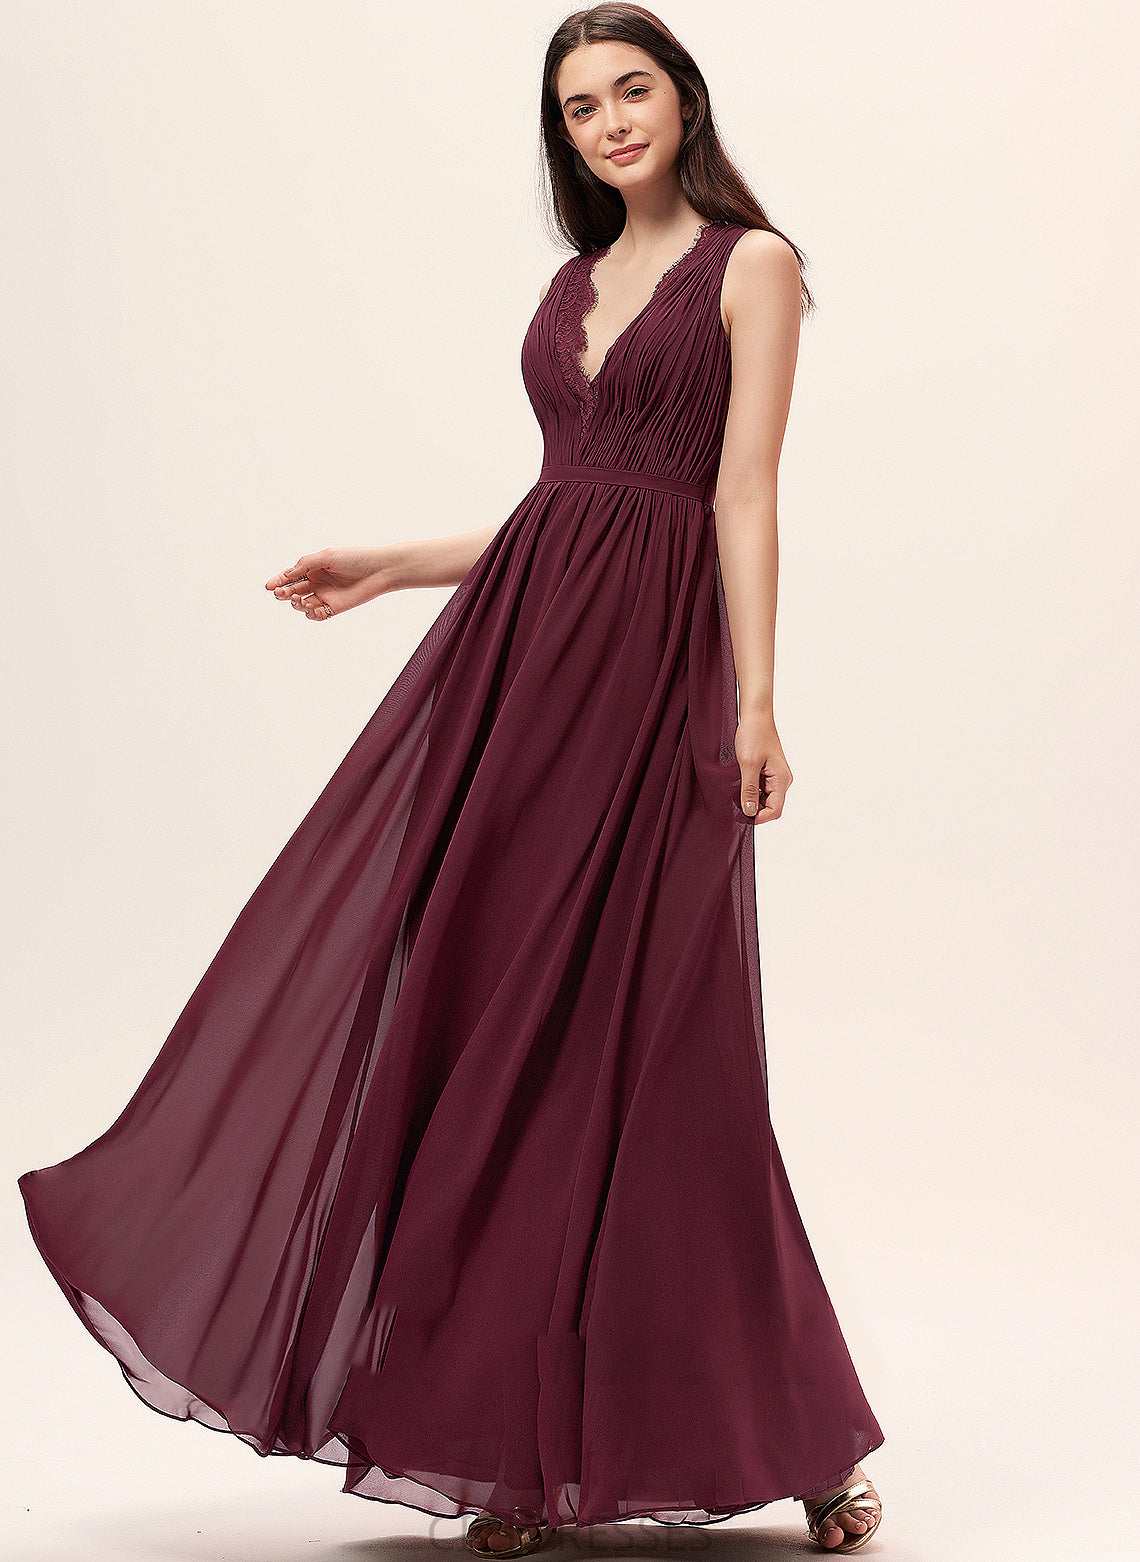 Silhouette Floor-Length Length Embellishment Fabric A-Line V-neck Ruffle Neckline Lace Ryan V-Neck Bridesmaid Dresses